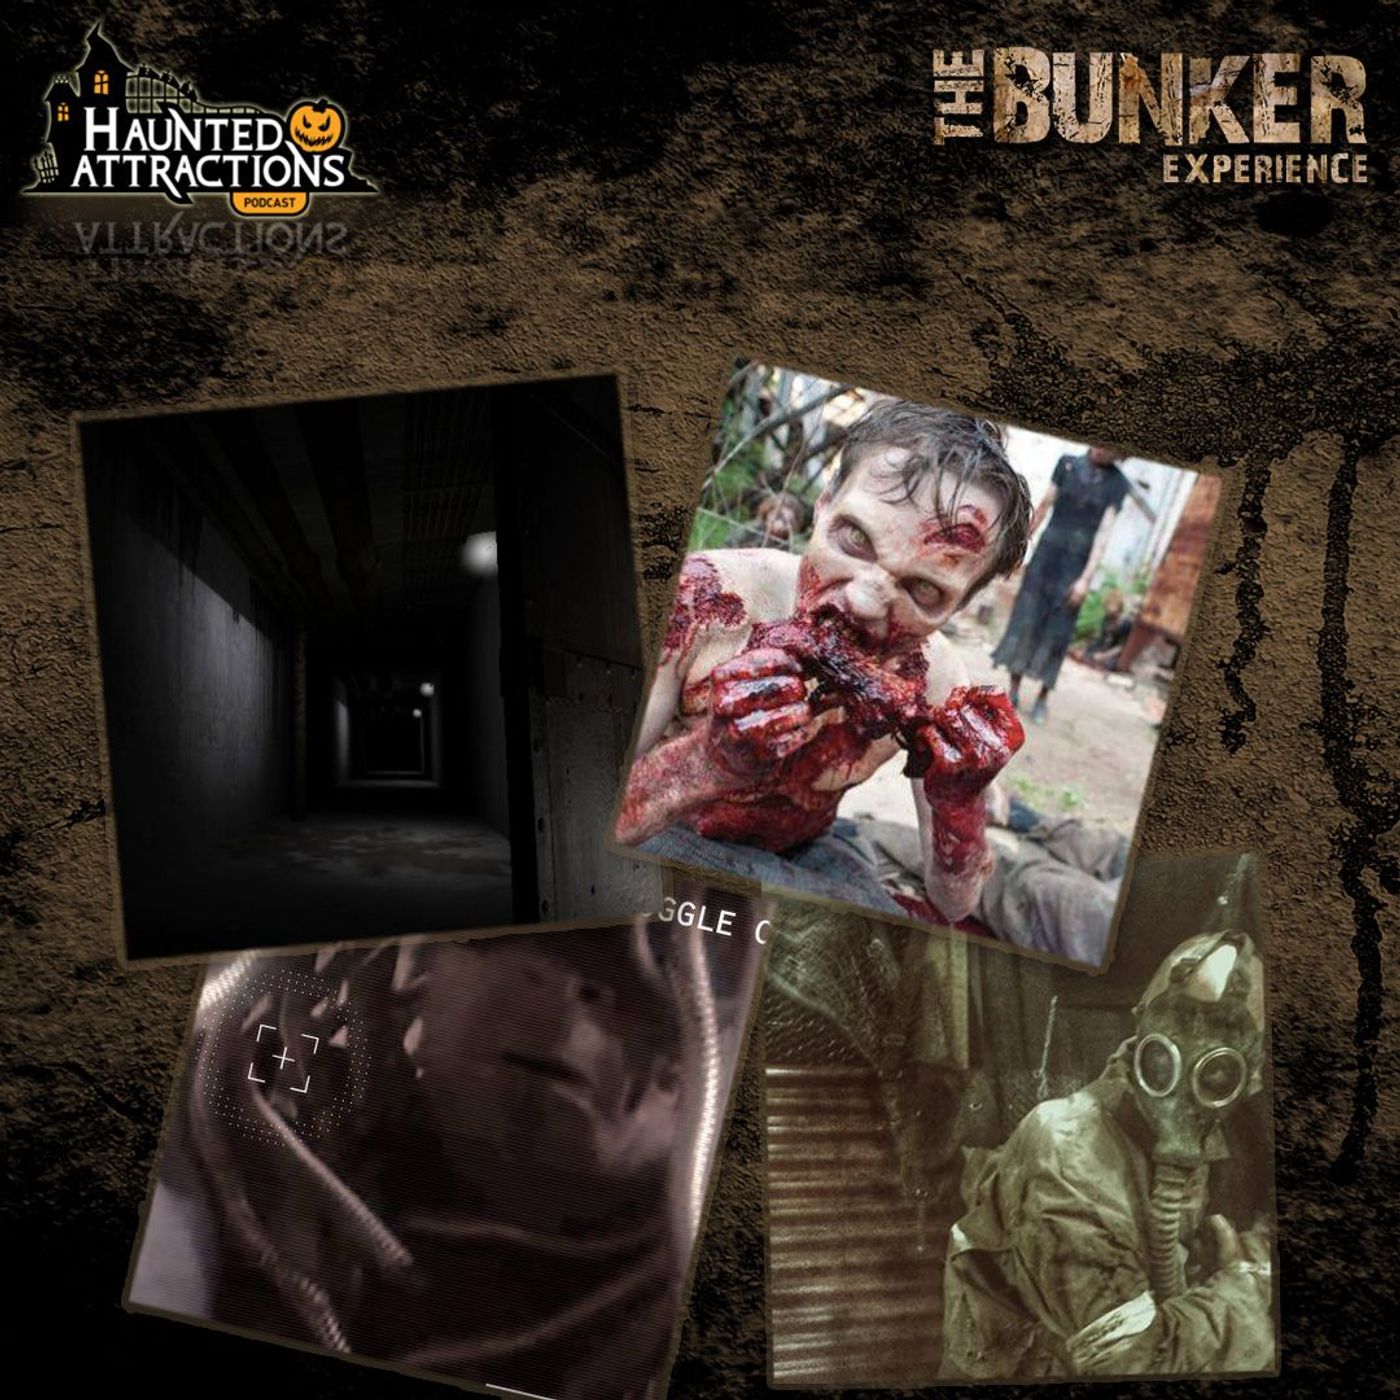 The Bunker Experience in Pasadena, California